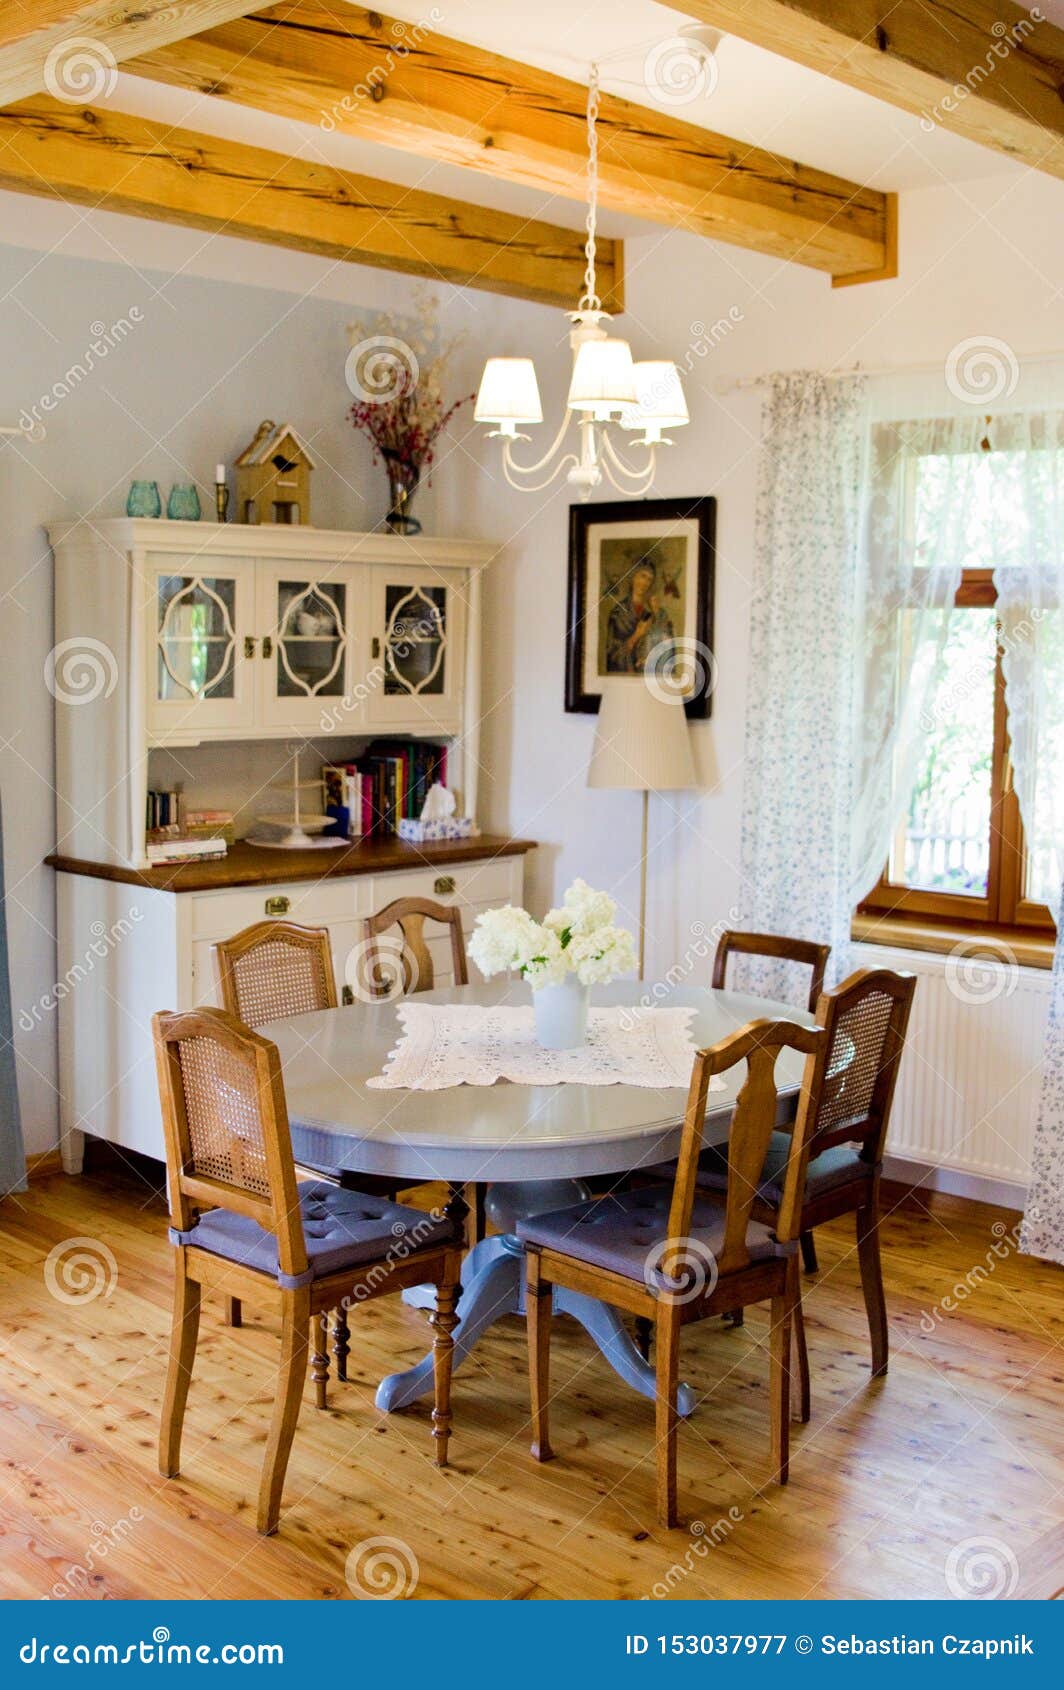 Interior Rústico Del Comedor Y De La Cocina Del Hogar Polaco Imagen de archivo - Imagen de pintado, muebles: 153037977